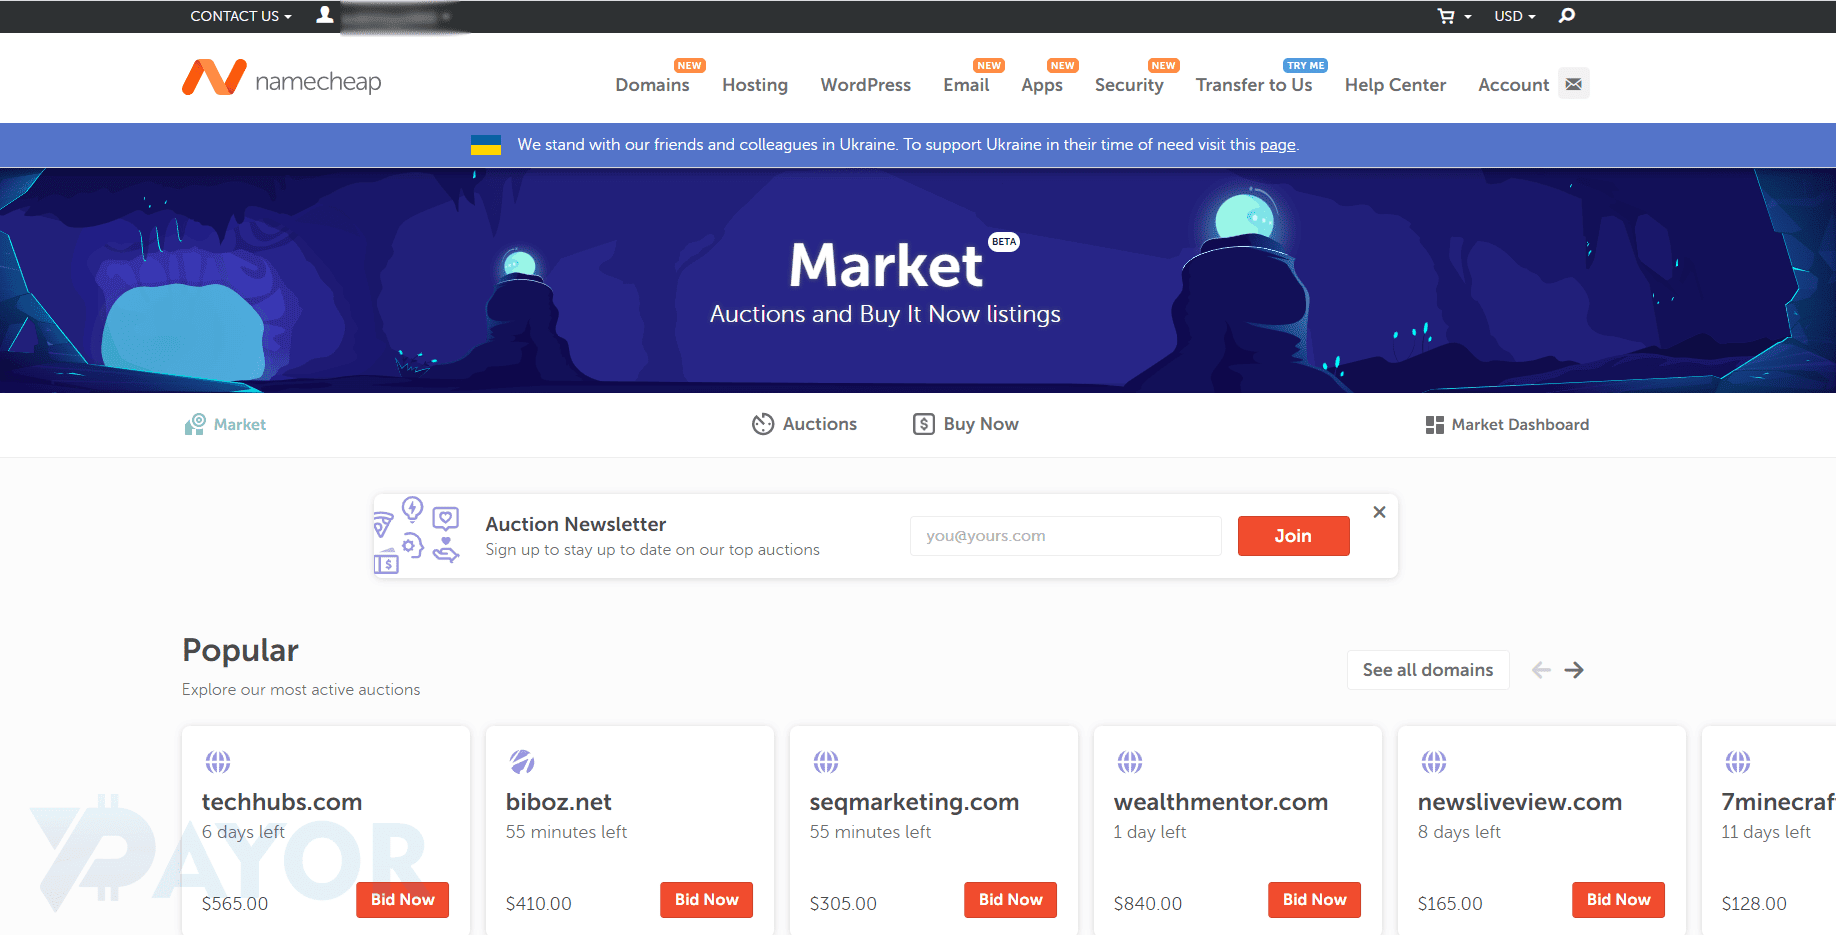 marketplace domain di namecheap